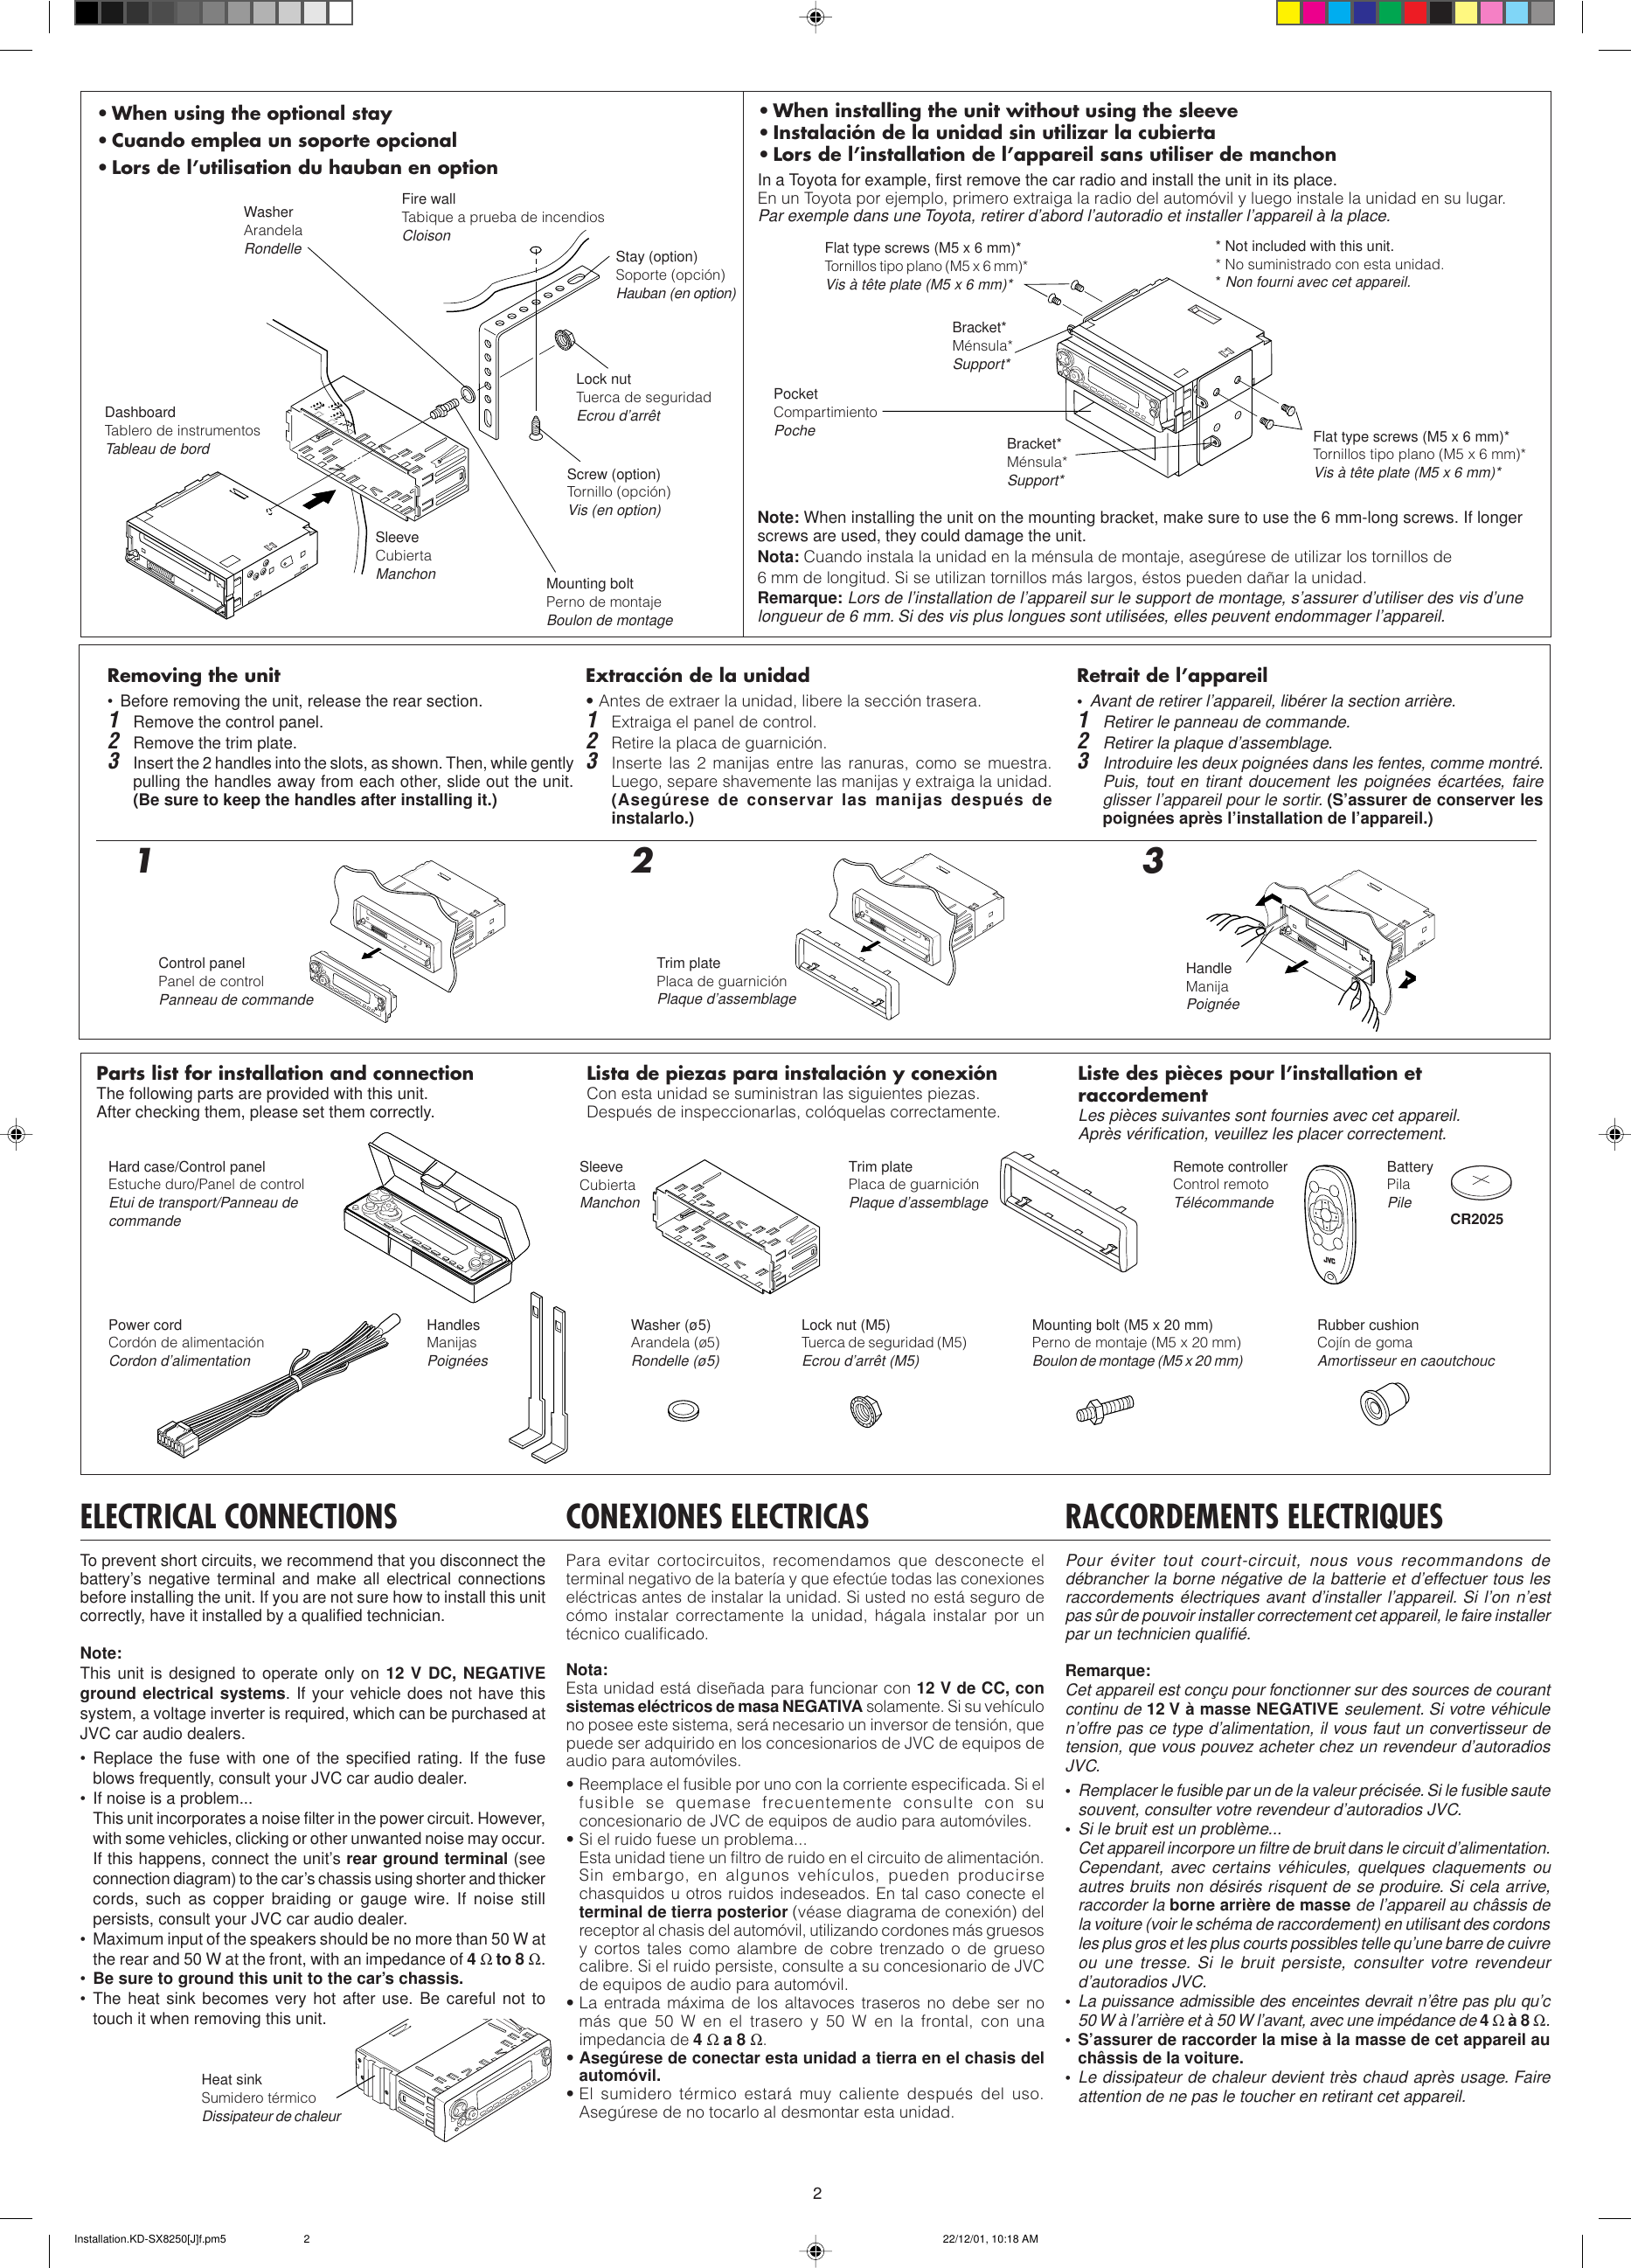 Page 2 of 4 - JVC KD-SX980 KD-SX980/KD-SX8250/KD-SX780 User Manual GET0071-002A